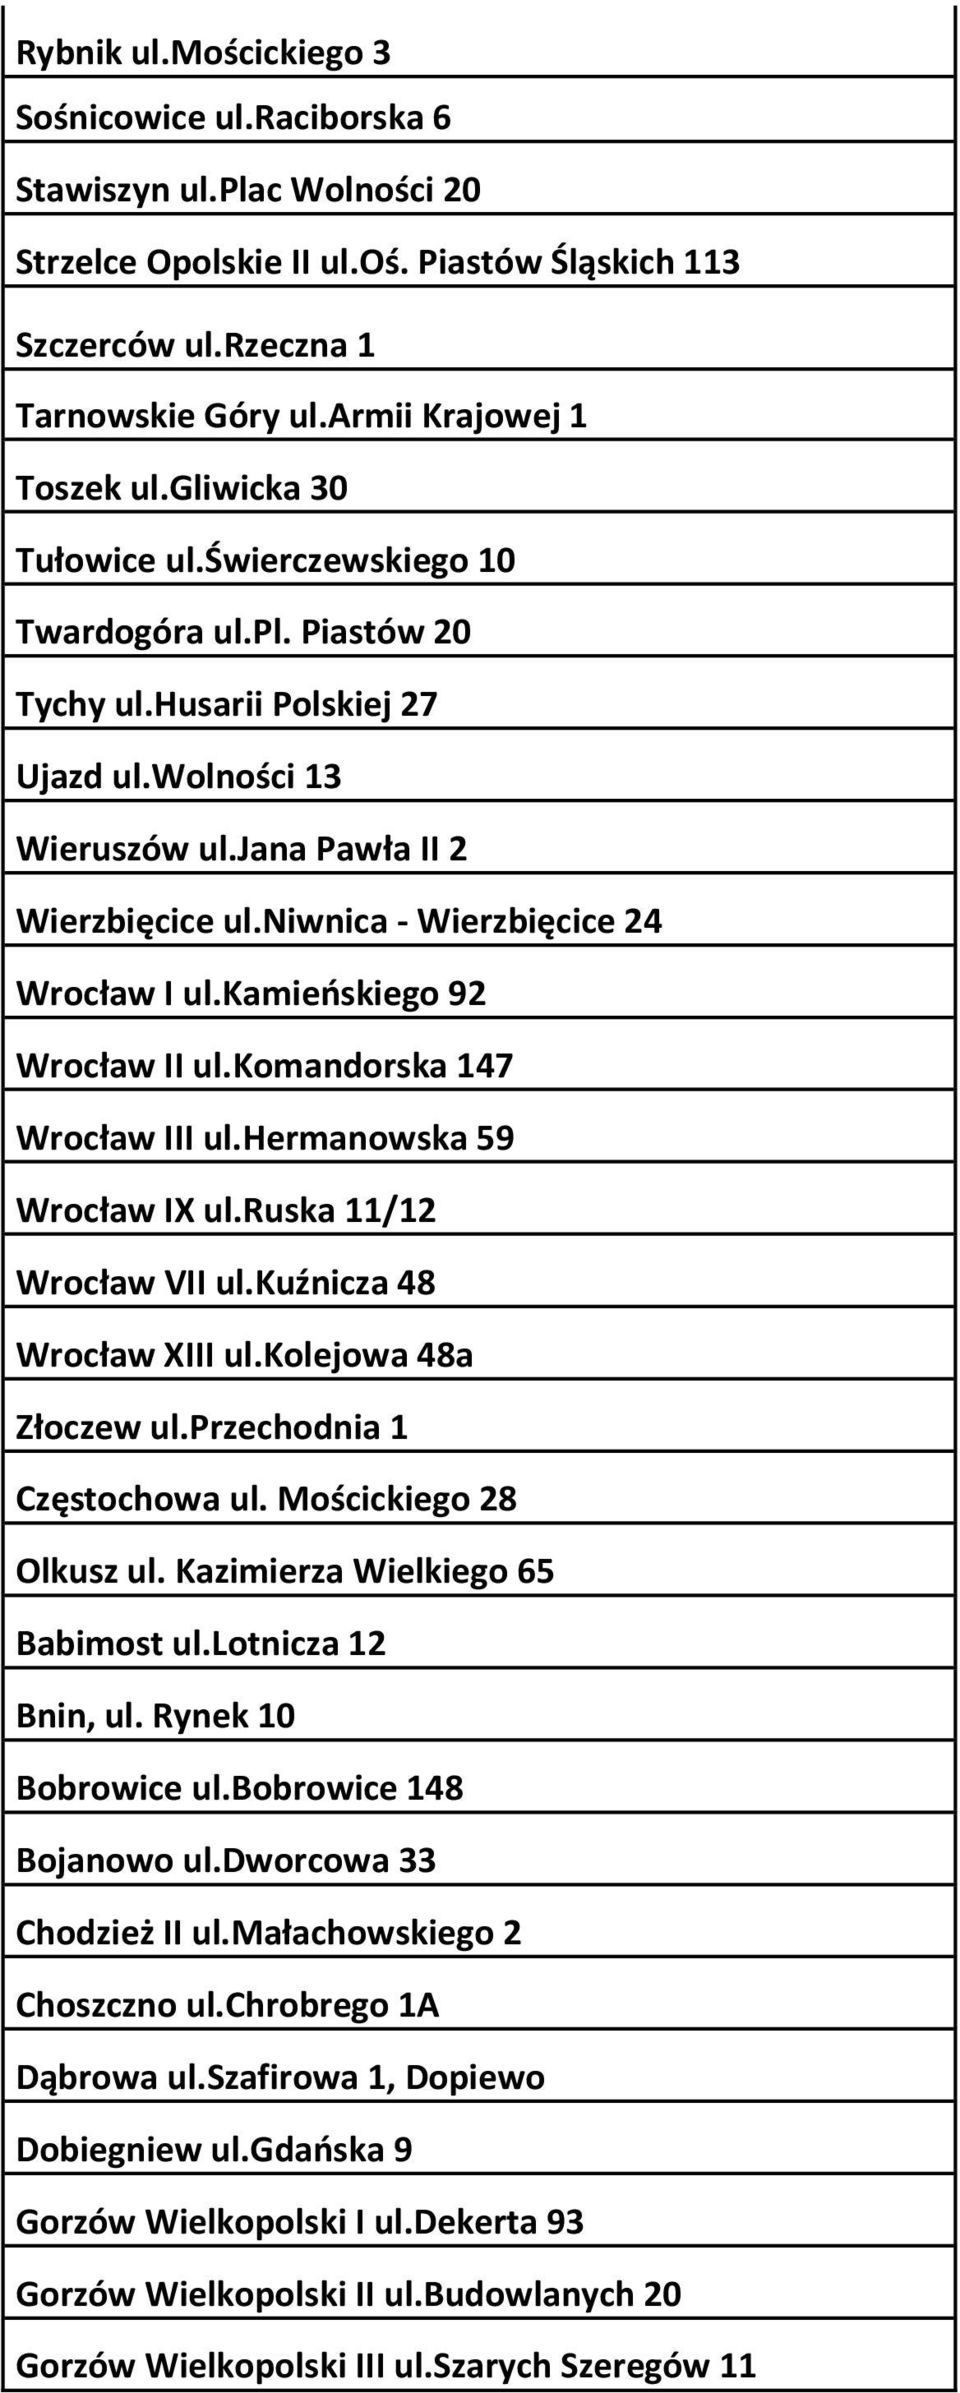 niwnica - Wierzbięcice 24 Wrocław I ul.kamieńskiego 92 Wrocław II ul.komandorska 147 Wrocław III ul.hermanowska 59 Wrocław IX ul.ruska 11/12 Wrocław VII ul.kuźnicza 48 Wrocław XIII ul.